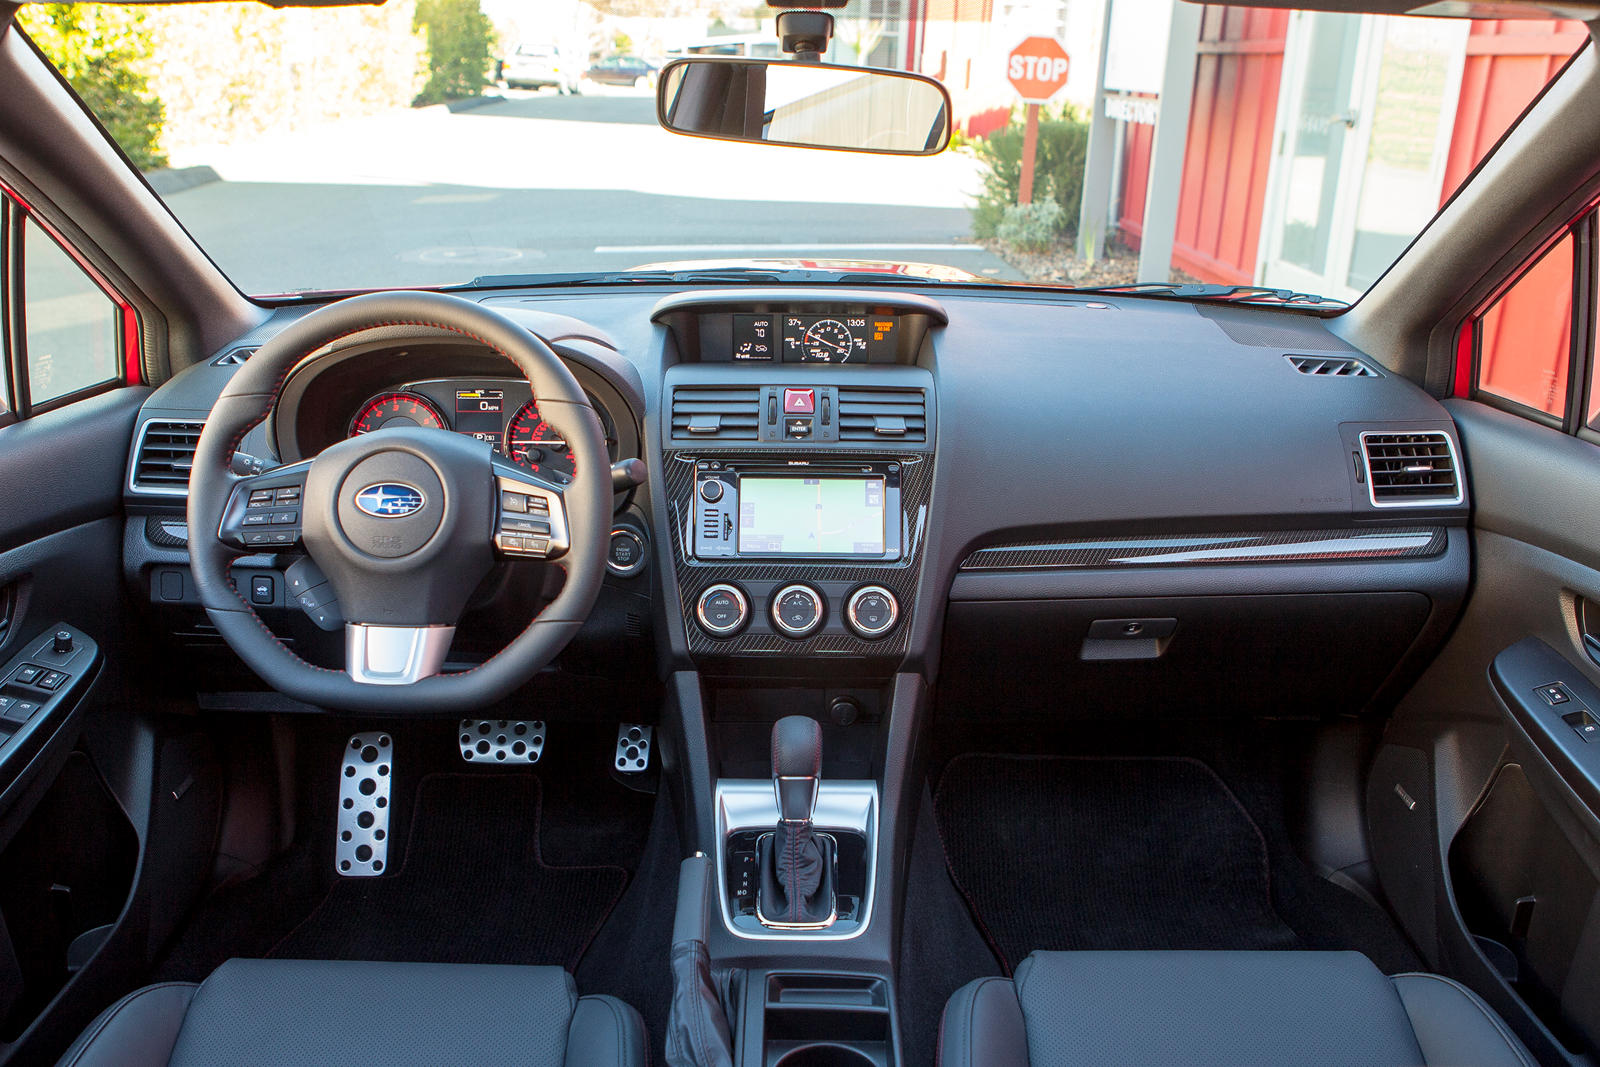 2017 Subaru WRX Sedan Infotainment System